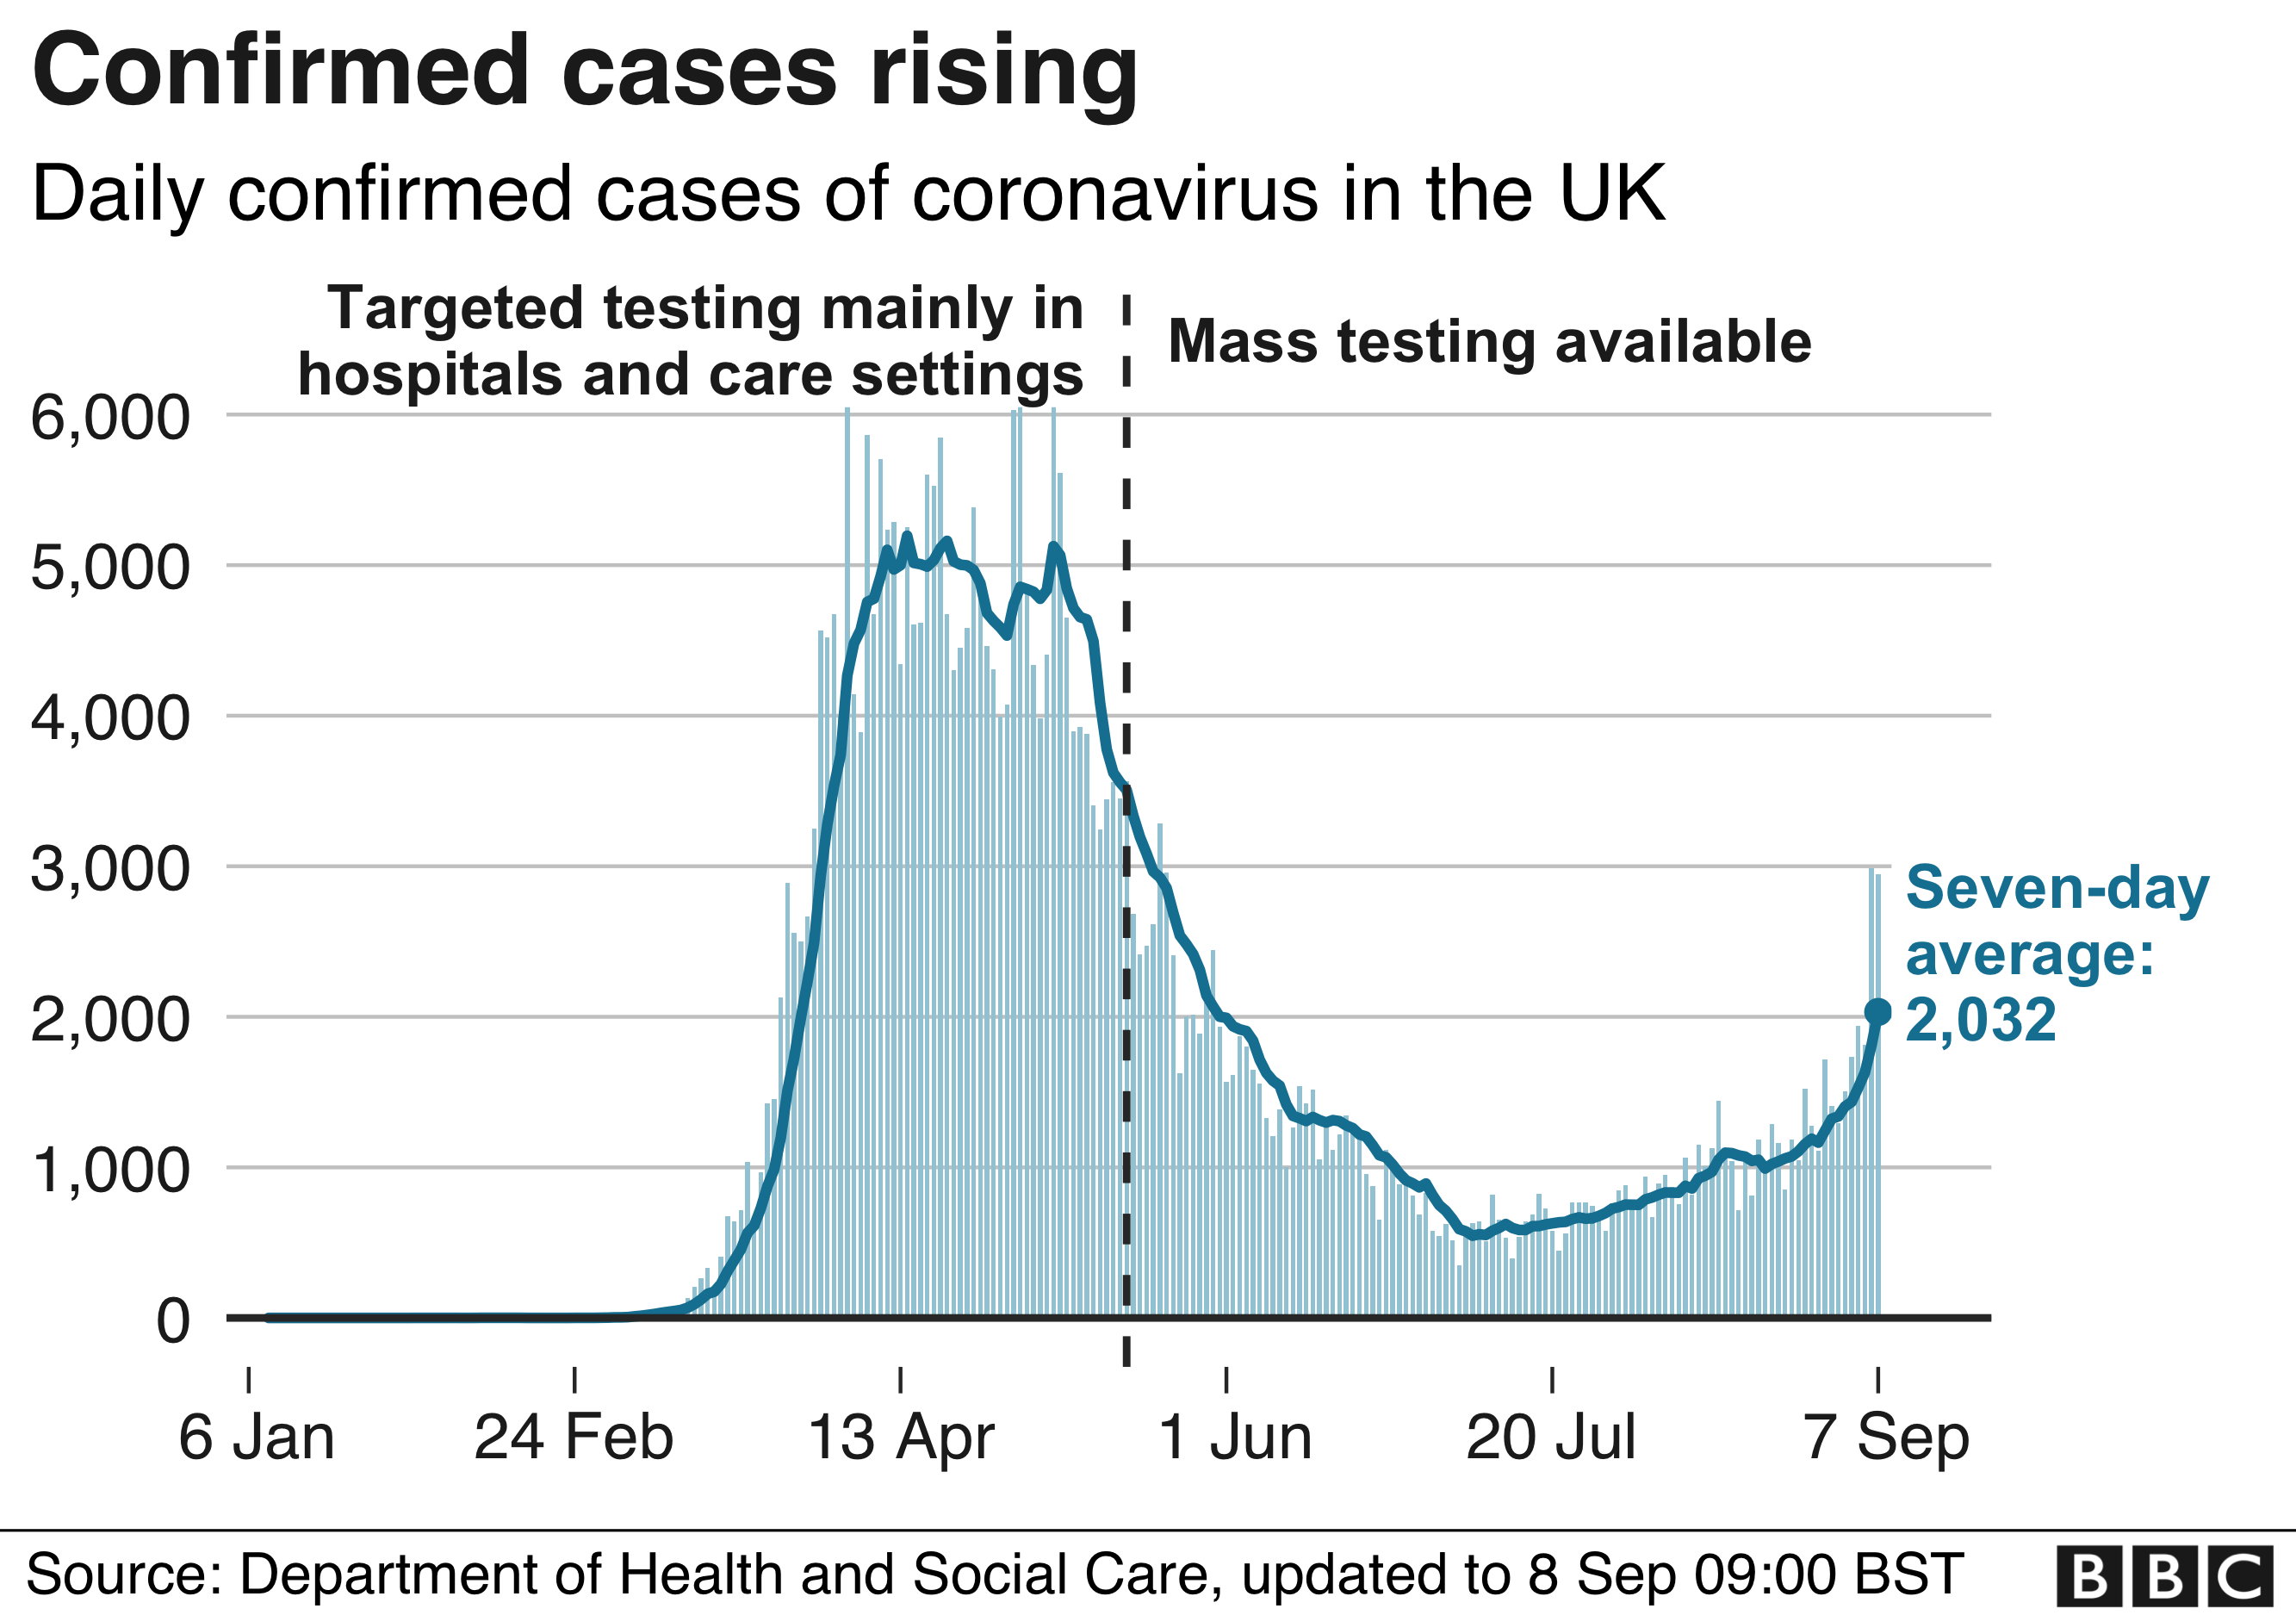 диаграмма, показывающая ежедневно подтвержденные случаи коронавируса в Великобритании с 6 января по 7 сентября 2020 года